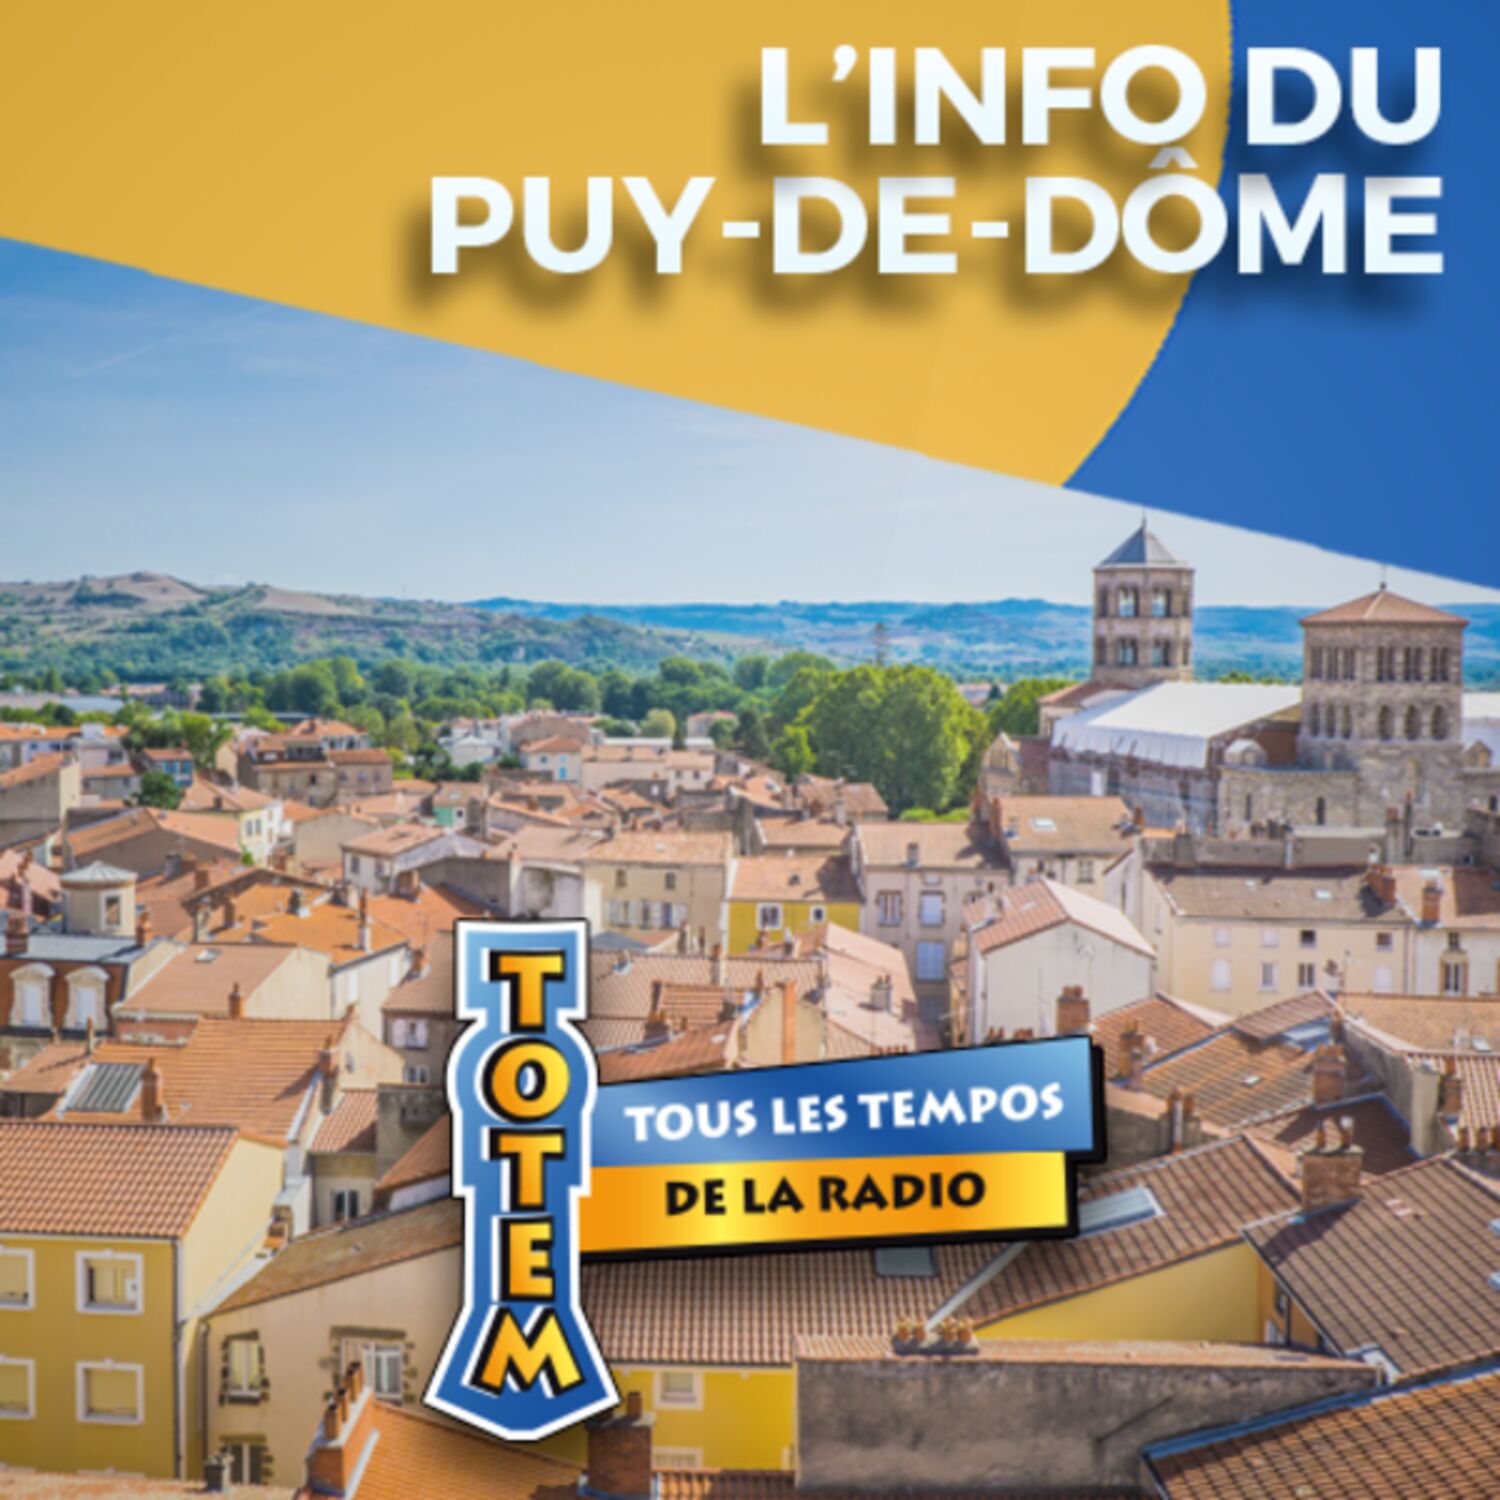 L'info du Puy-de-Dôme du 06/04/23 à 17h59